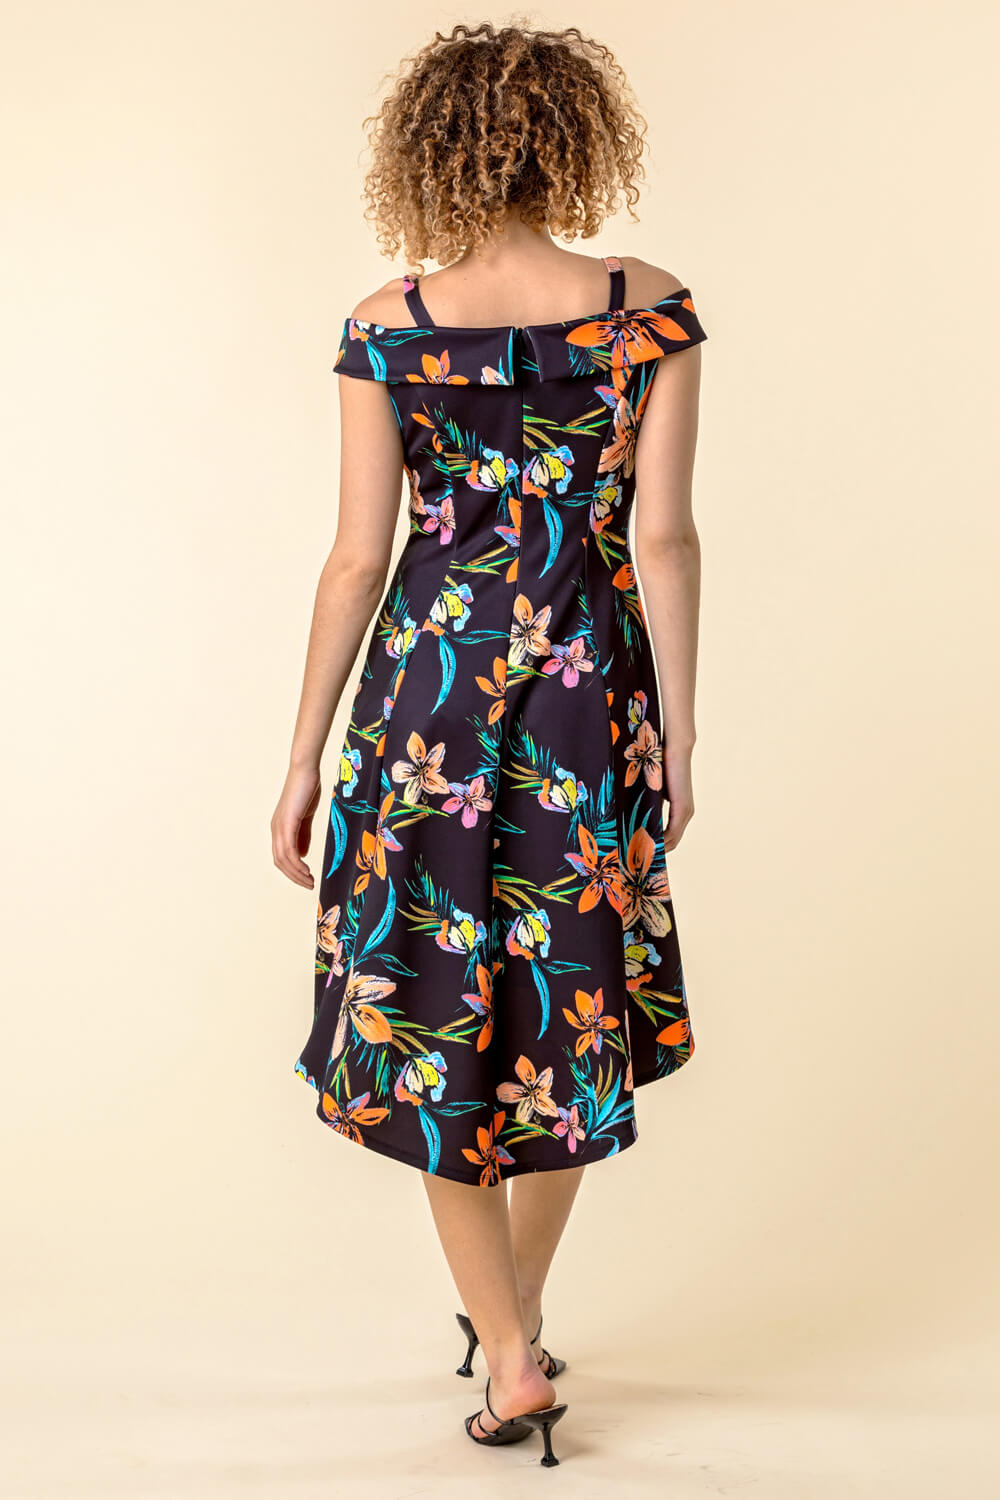 Black Cold Shoulder Floral Print Dress, Image 3 of 4